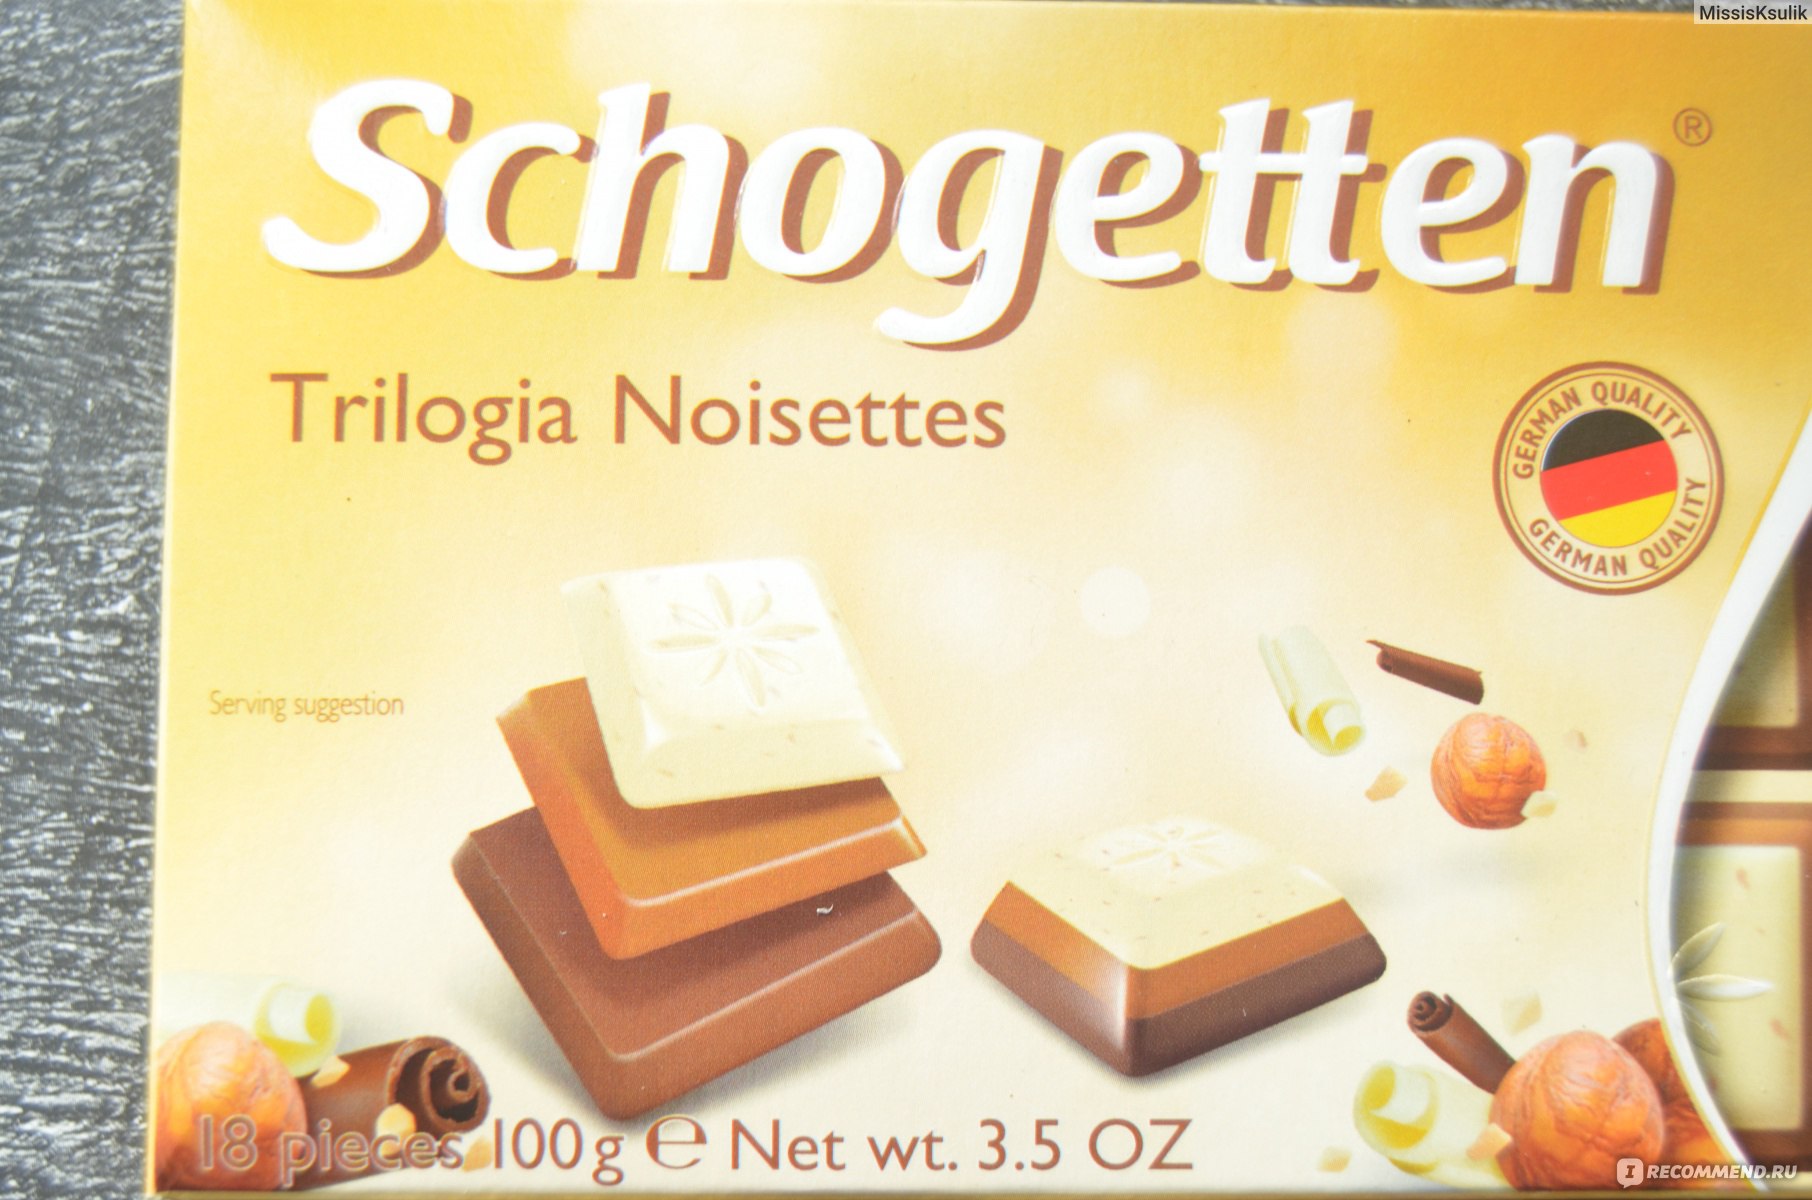 Schogetten шоколадная плитка trilogia noisettes